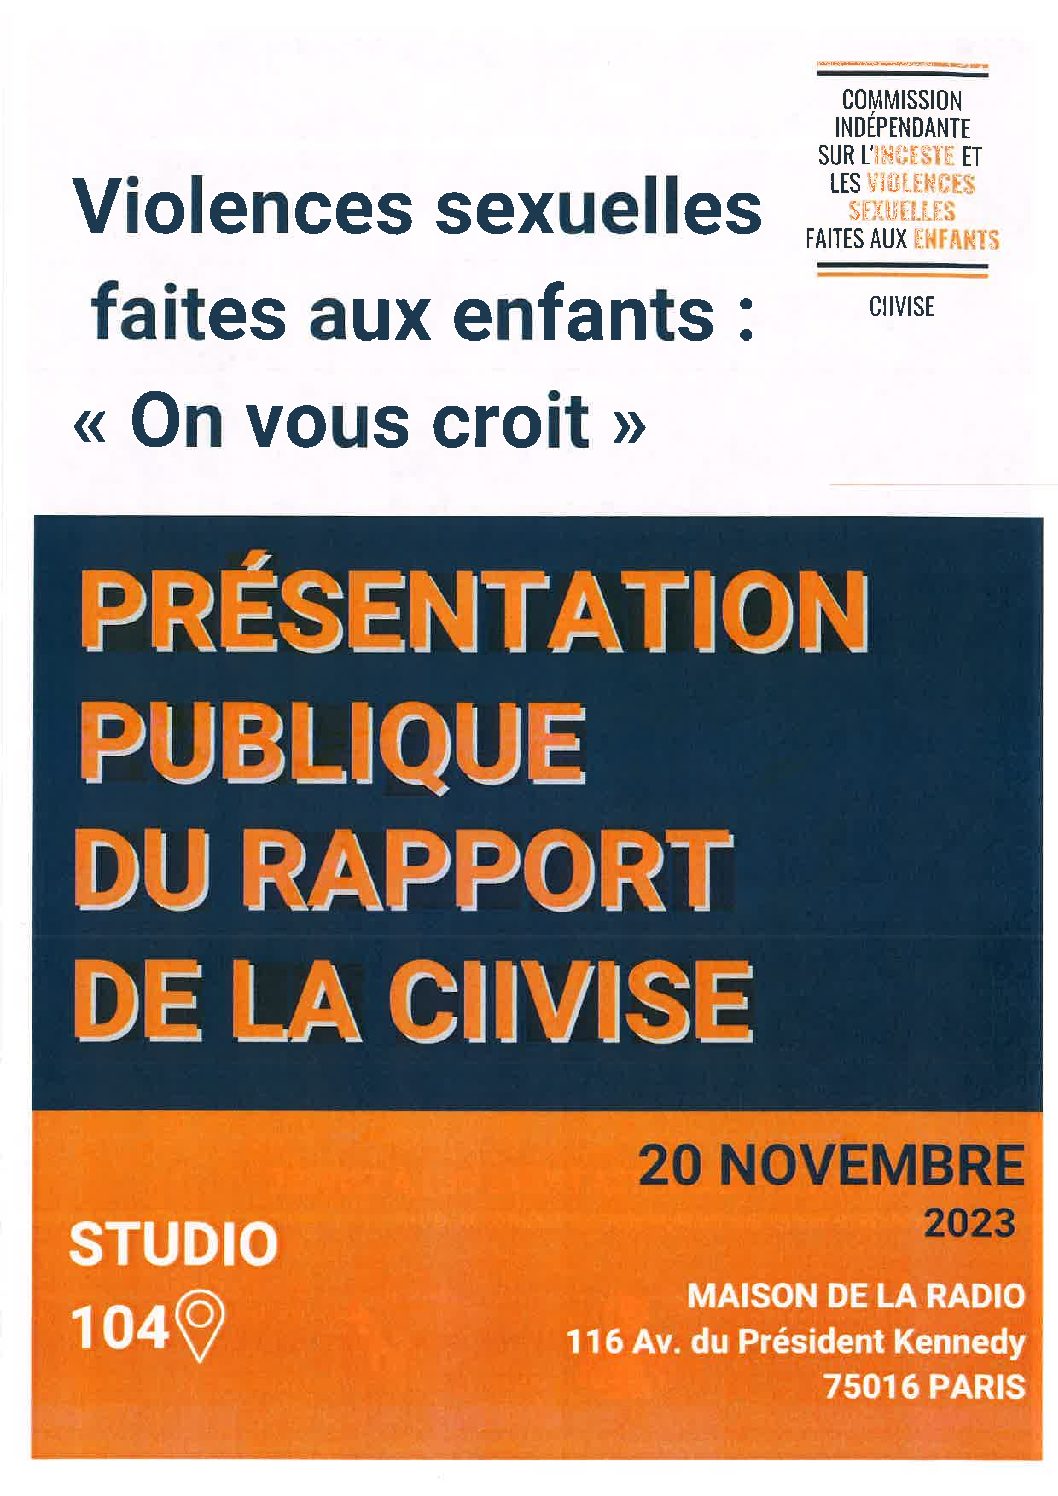 20 novembre 2023 : 13h-18h30 – studio 104 de la Maison de la Radio. Présentation publique du rapport de la CIIVISE.